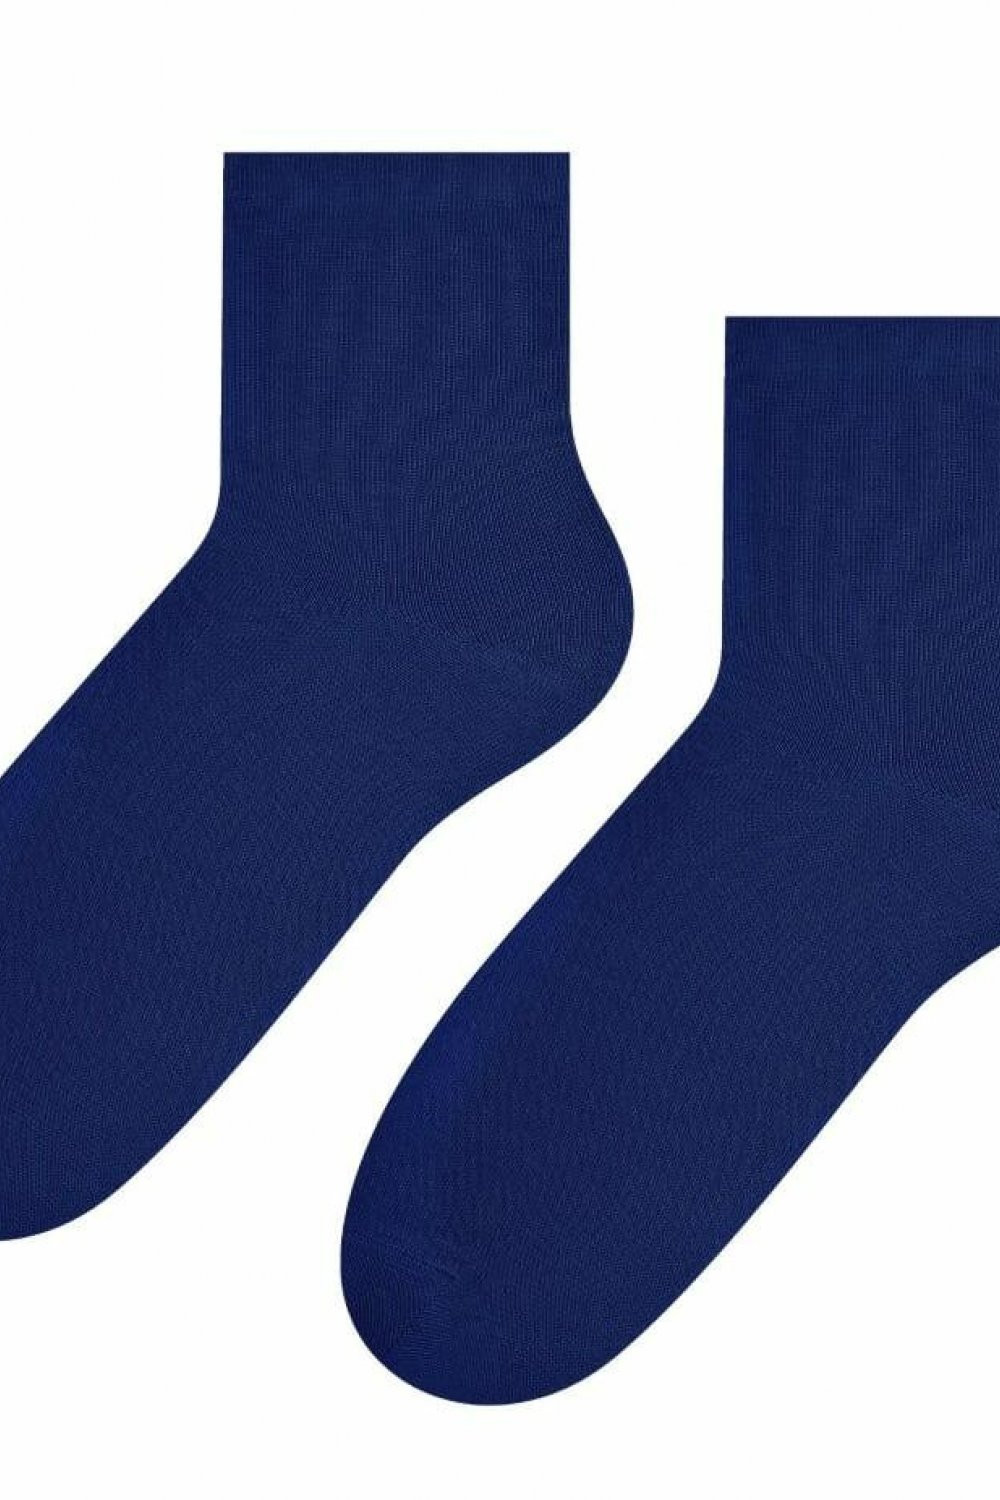 Dámské ponožky 037 dark blue - Steven tmavě modrá 38/40